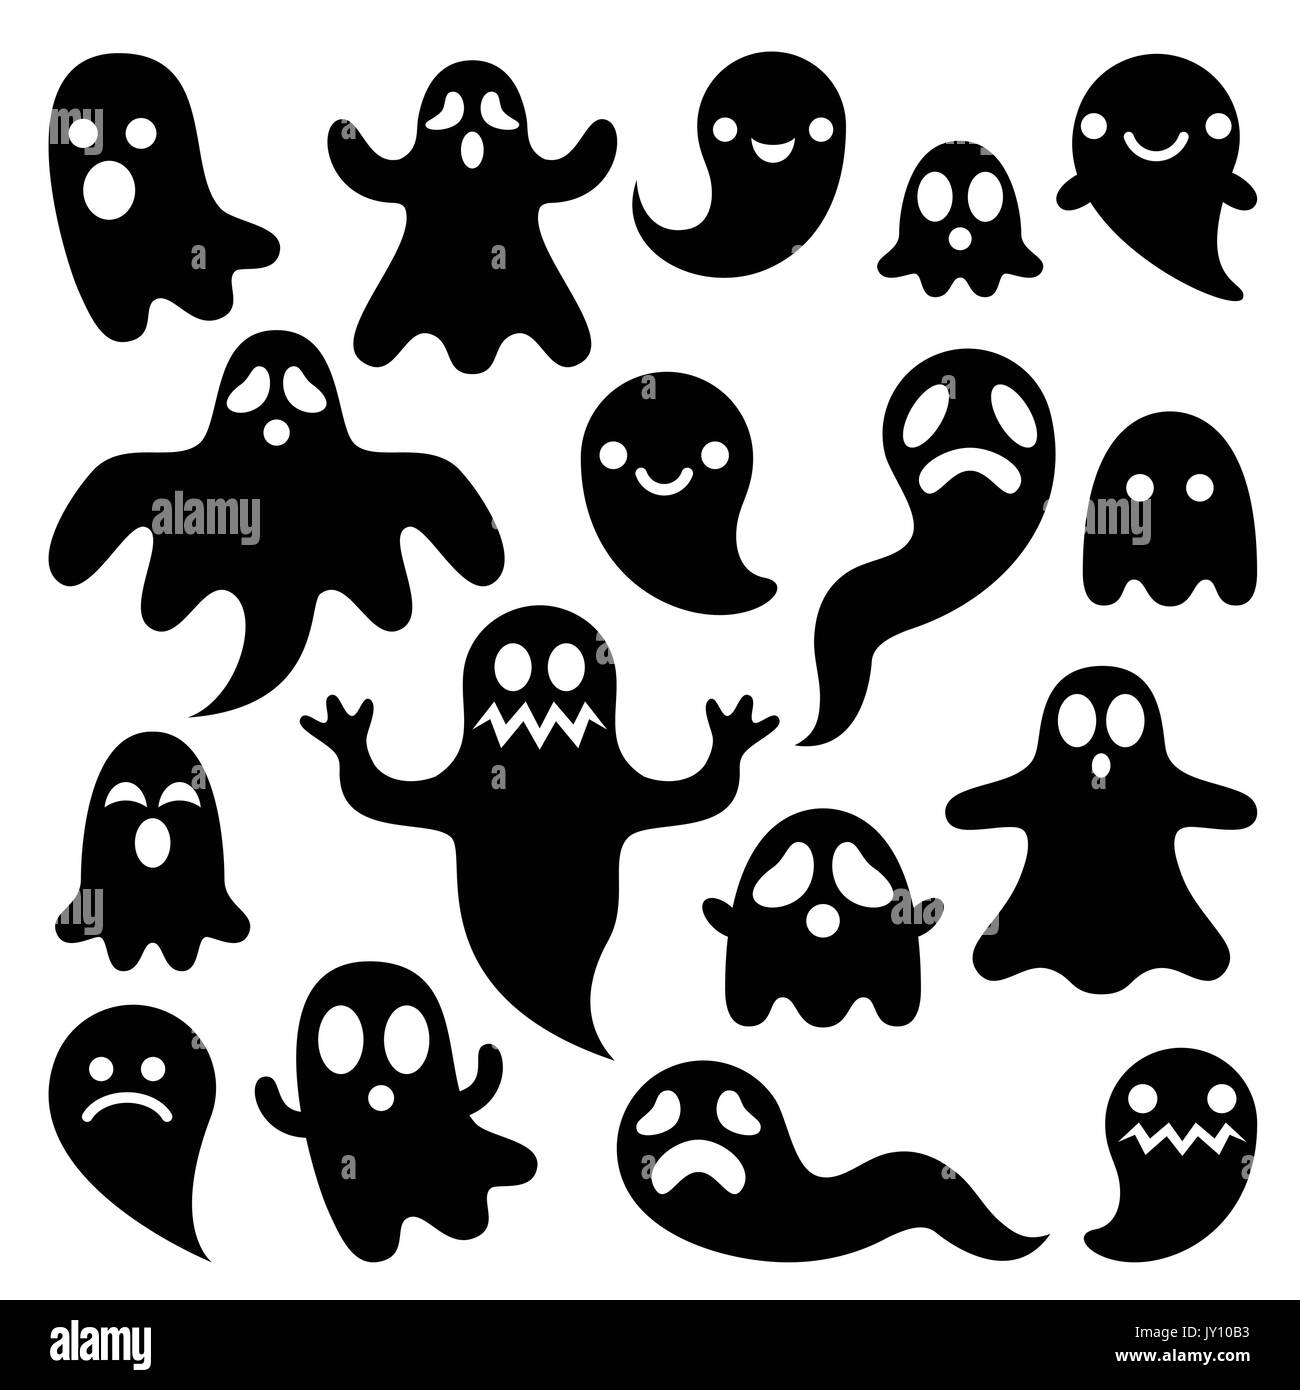 Fantômes effrayants design, personnages de l'Halloween icons set Vector icons set pour l'Halloween - cartoon caractères ghost isolated on white Illustration de Vecteur